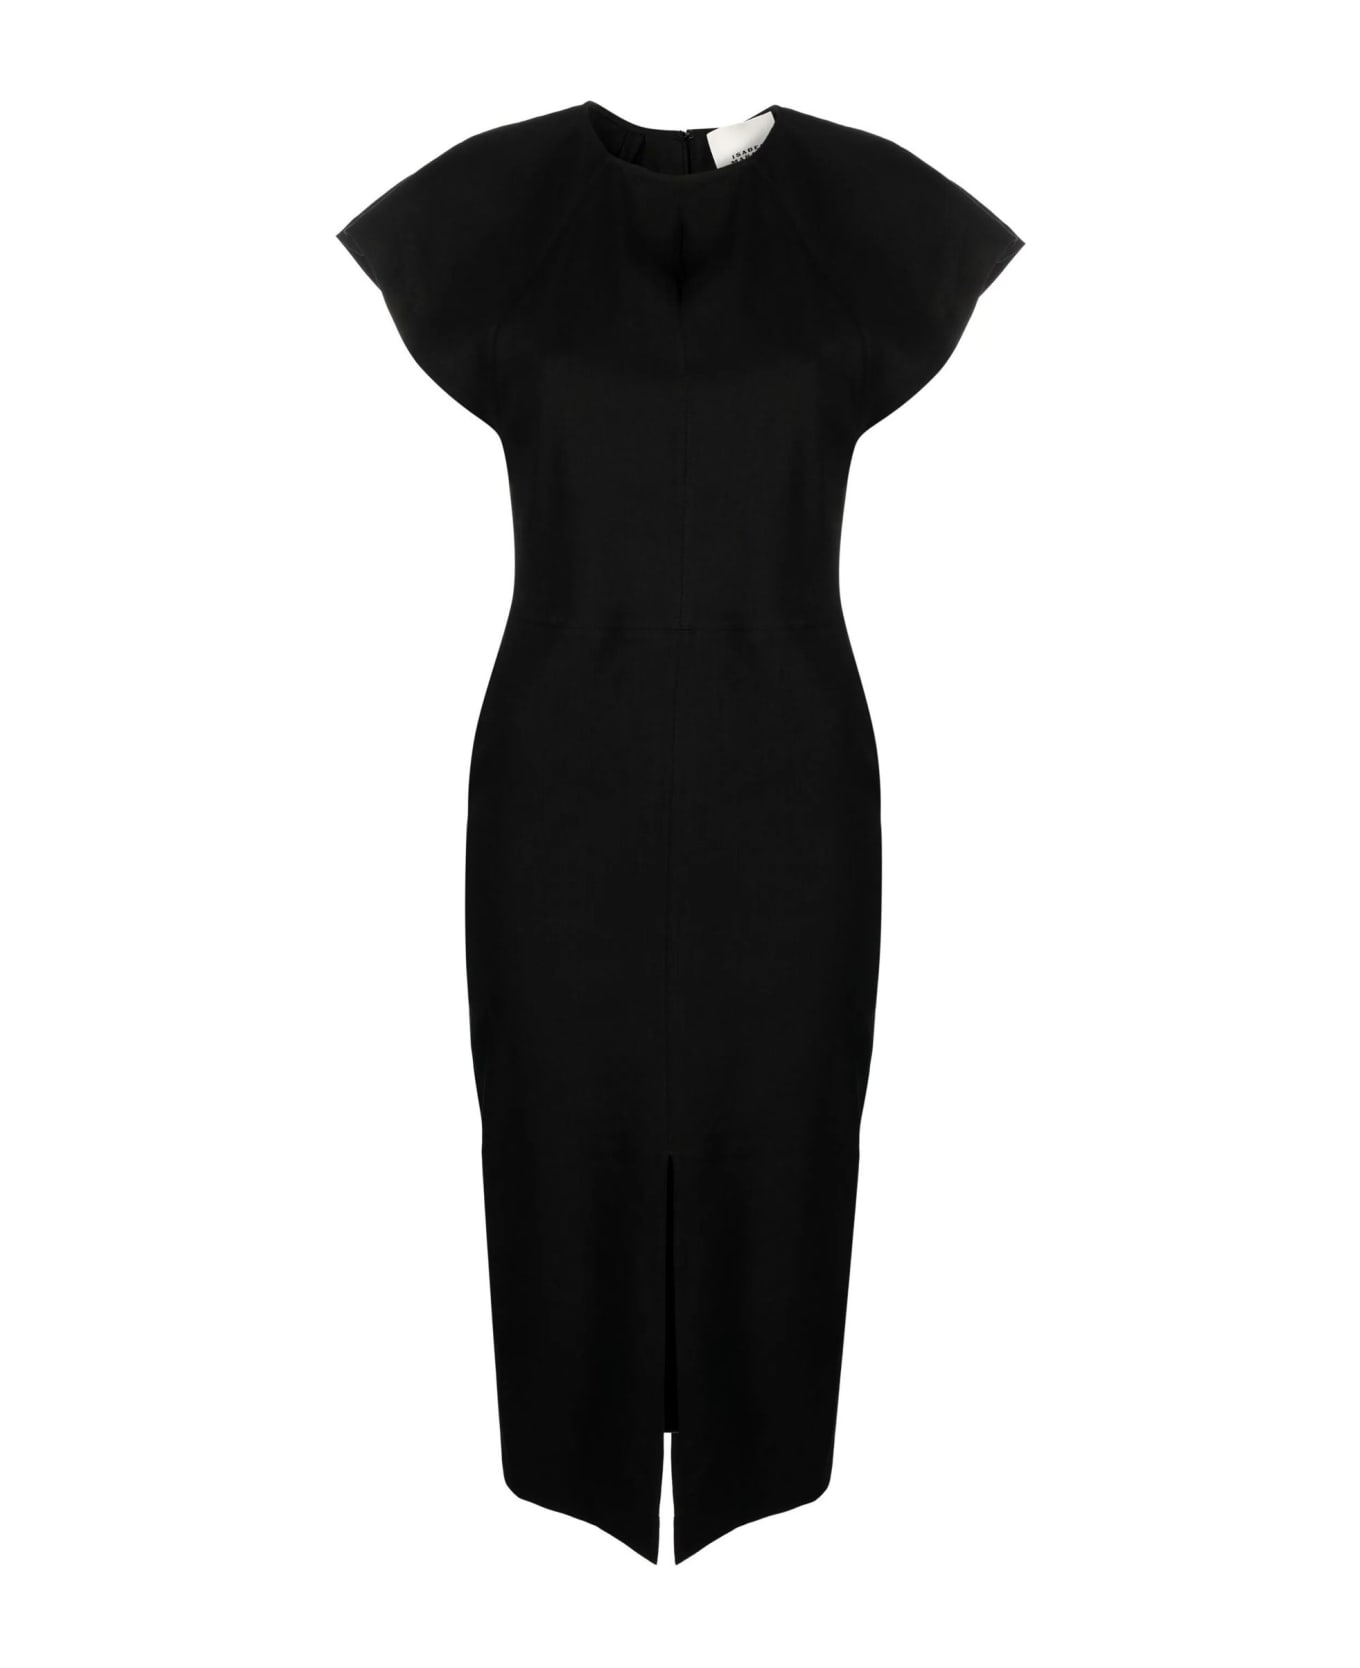 Isabel Marant Black Pencil Dress - Black